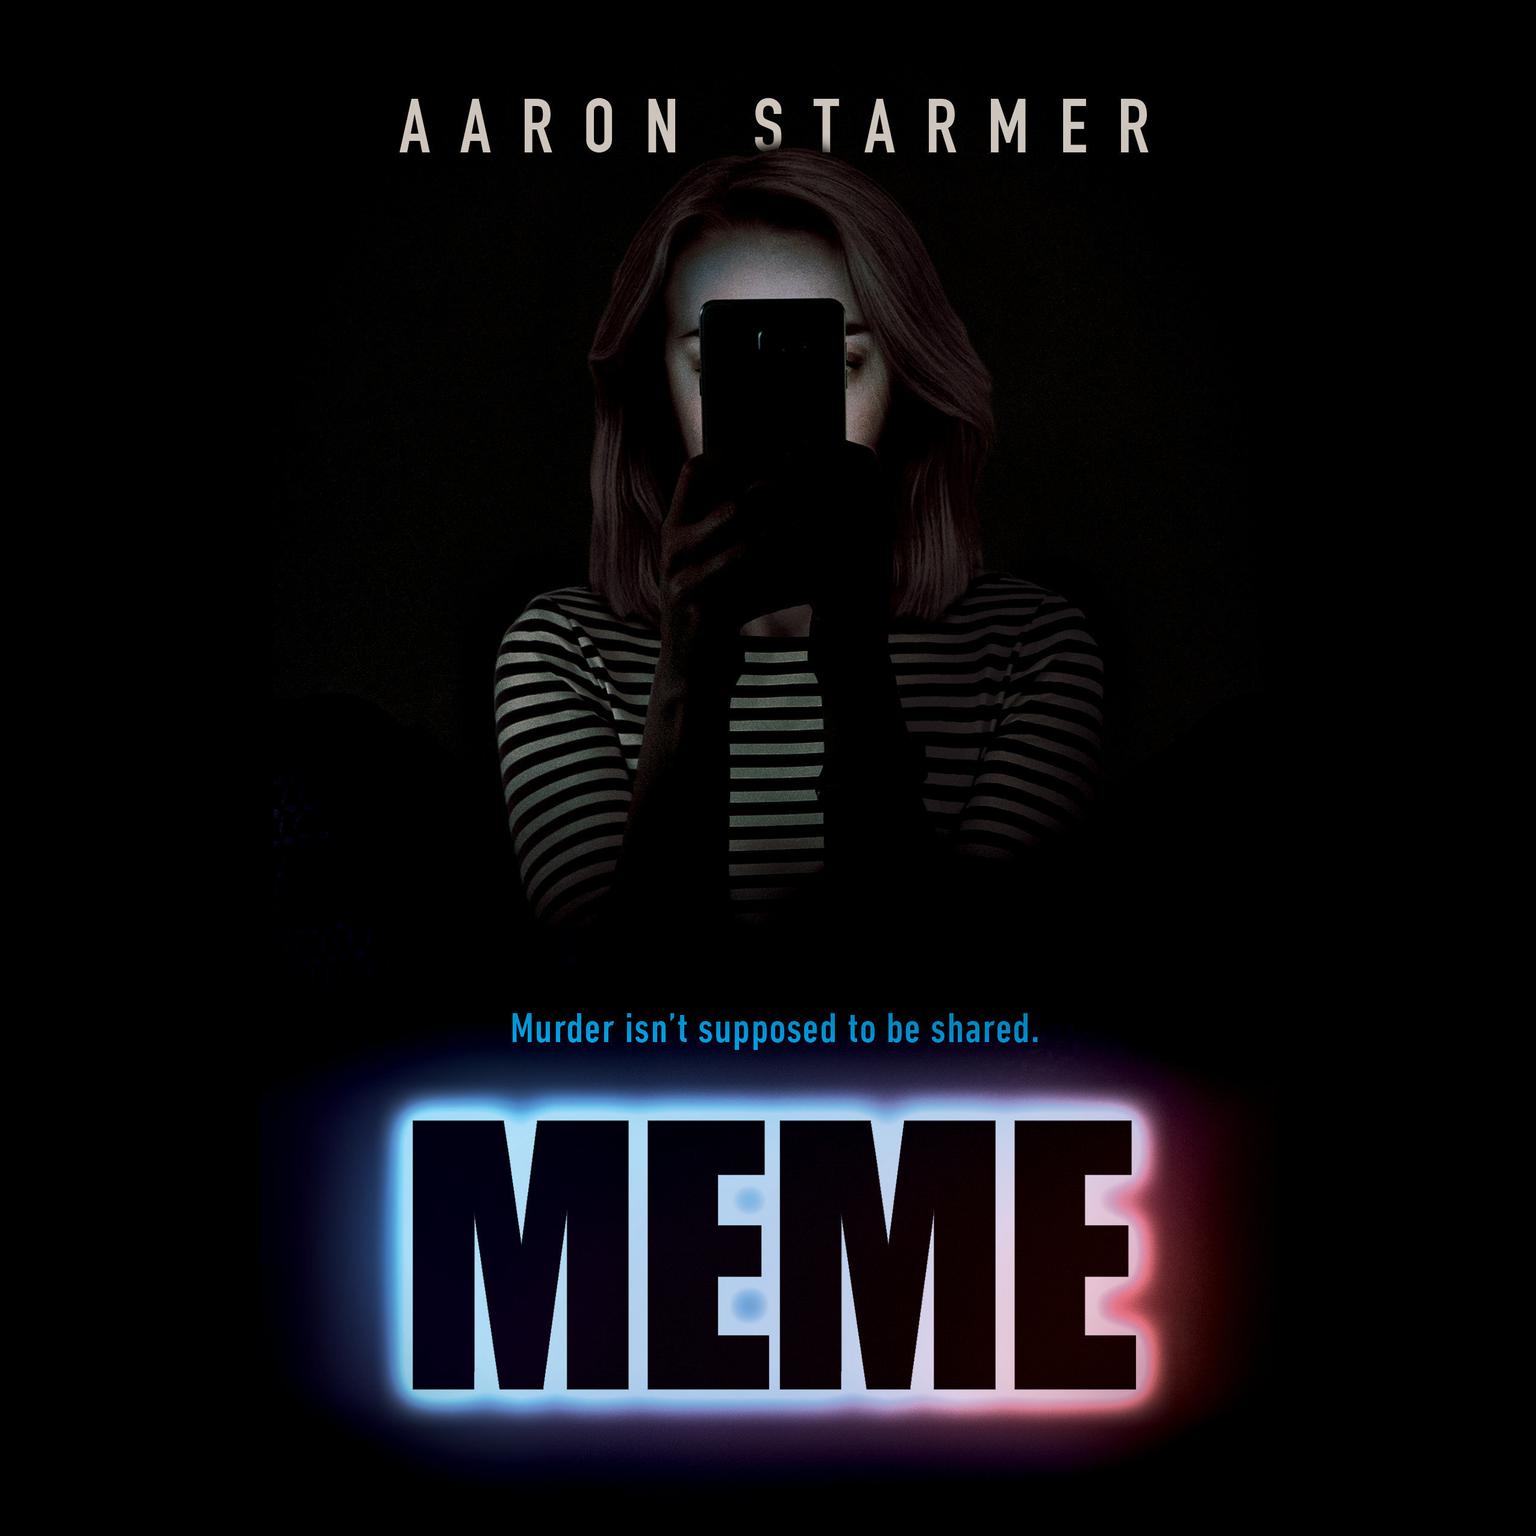 Meme Audiobook, by Aaron Starmer